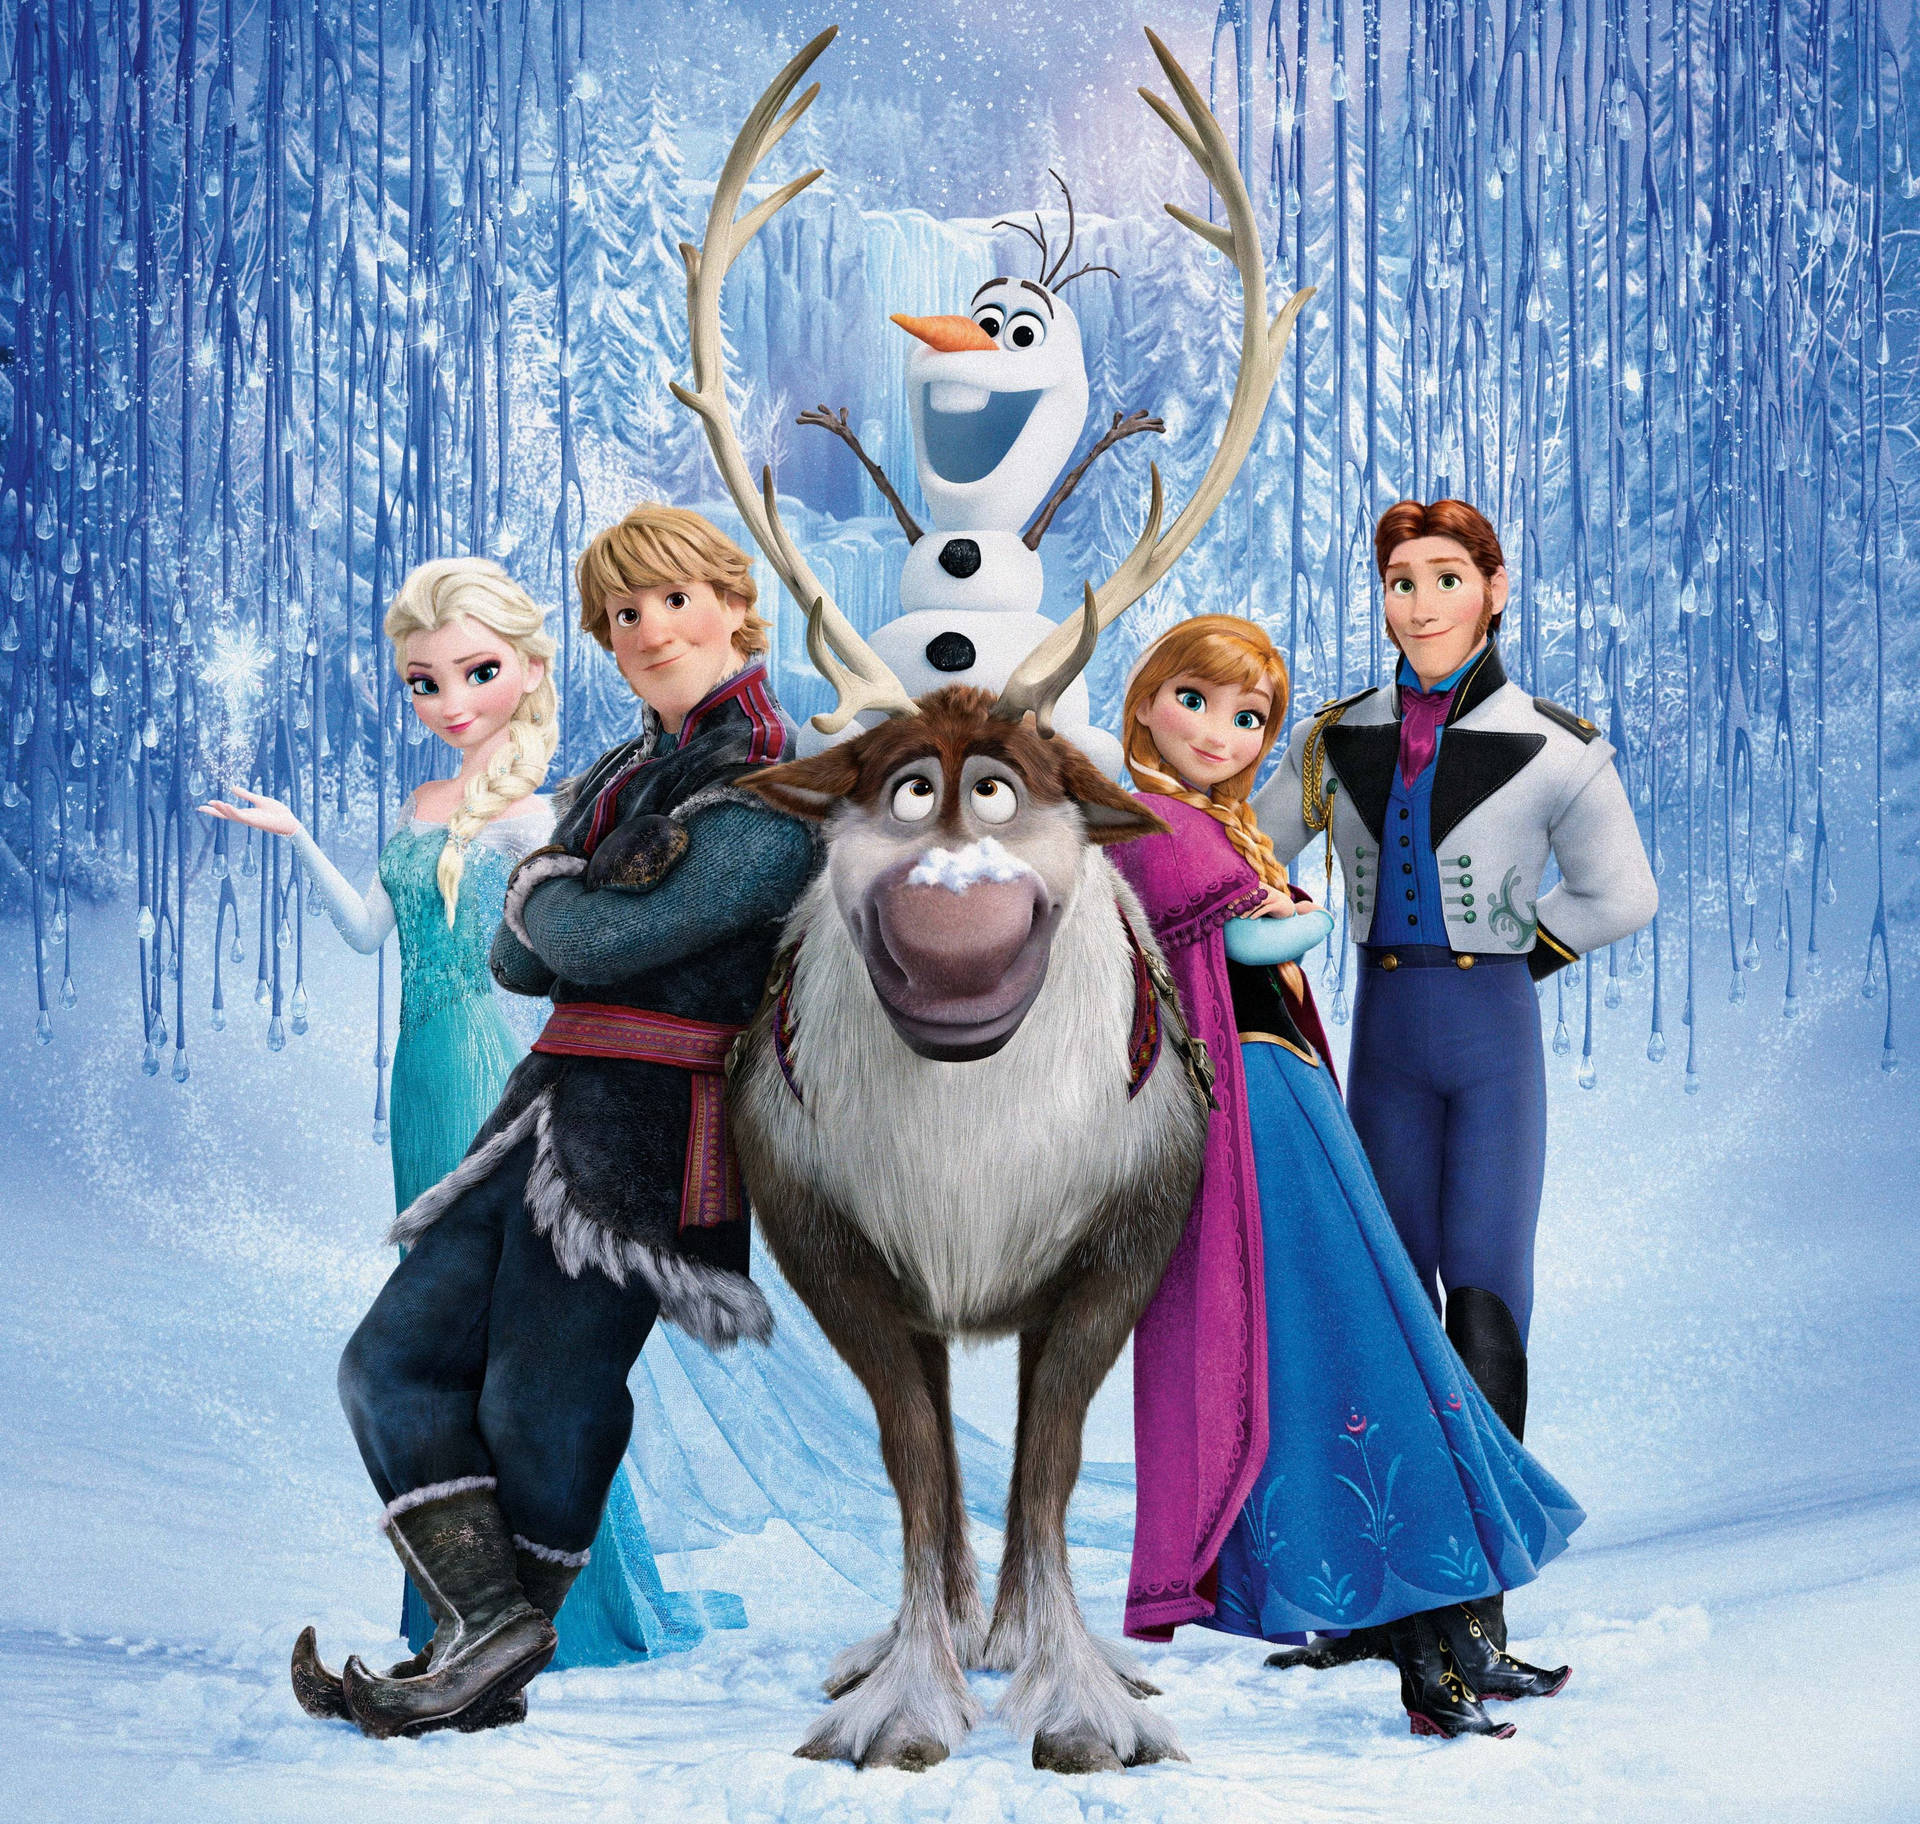 Frozen Elsa Characters Poster. Wallpaper